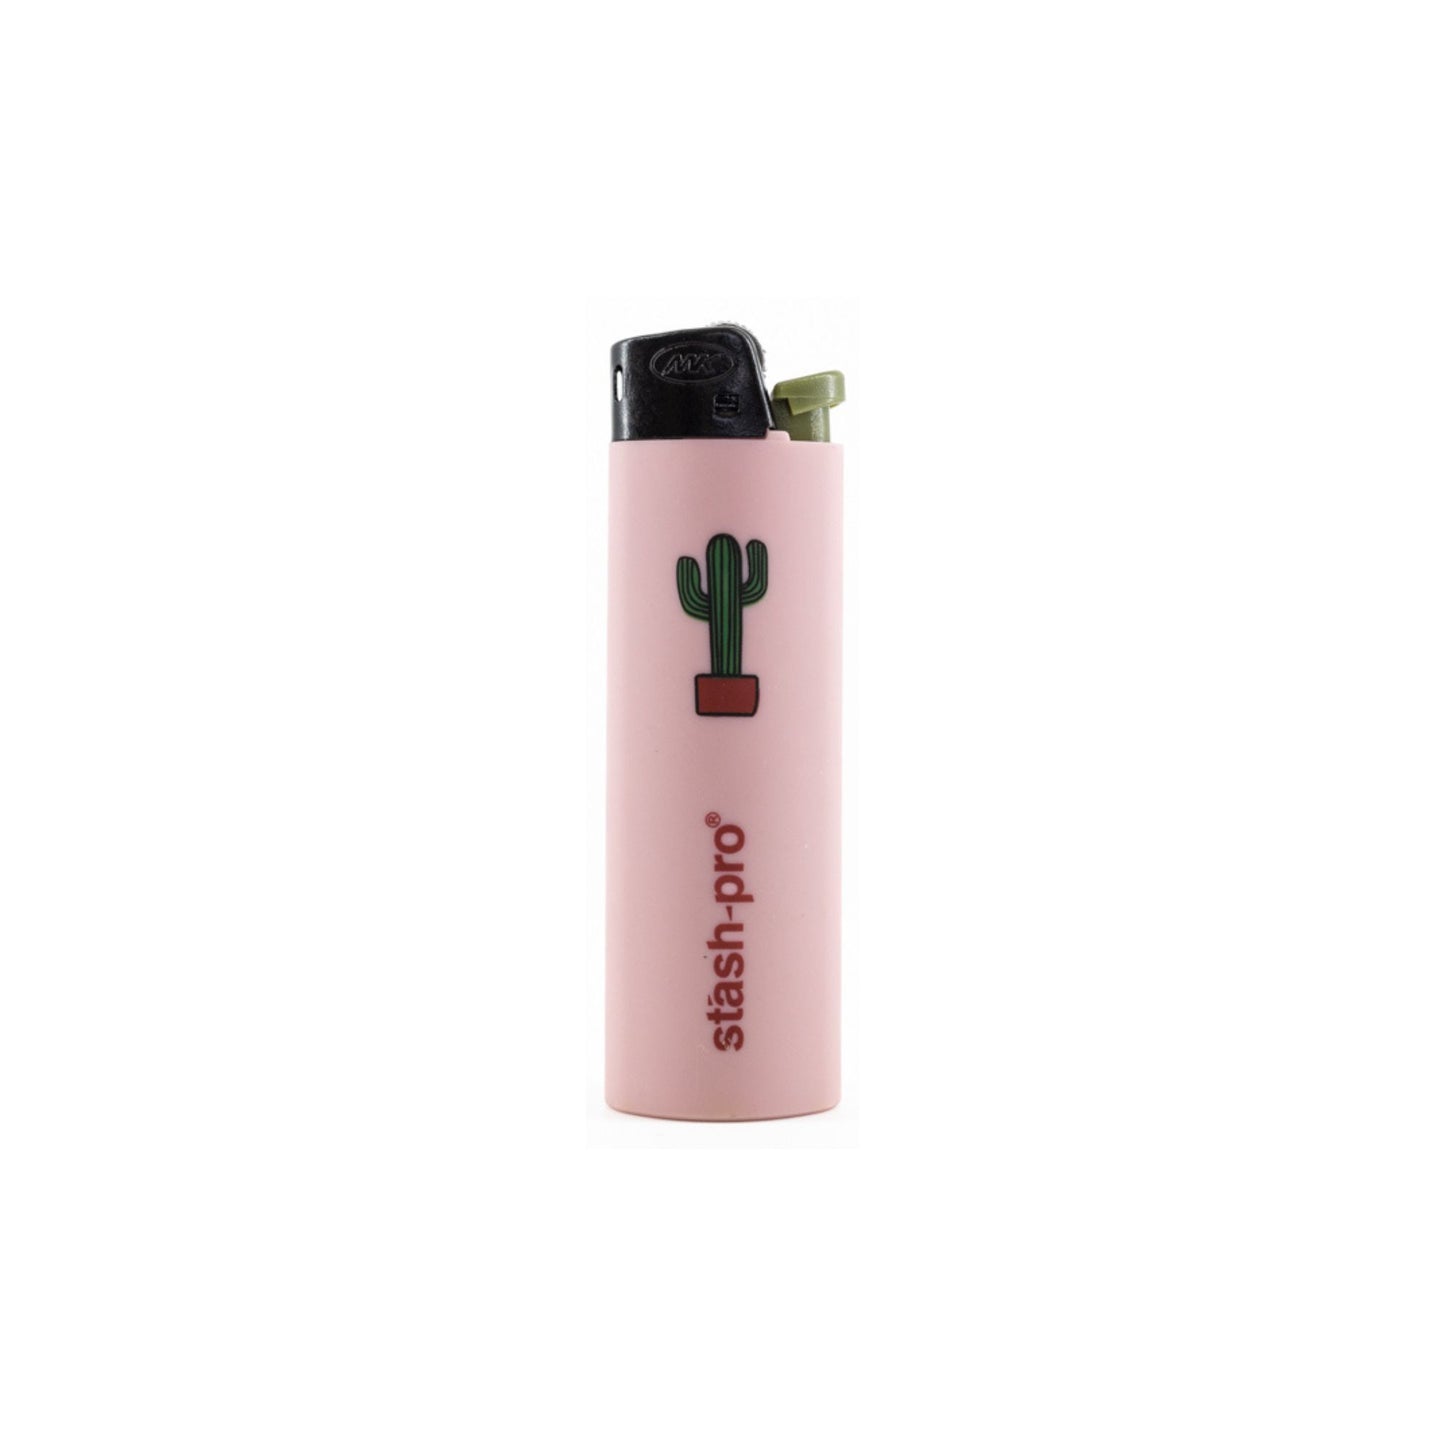 Stash-Pro Pocket Lighter ZY13ES1 Pink